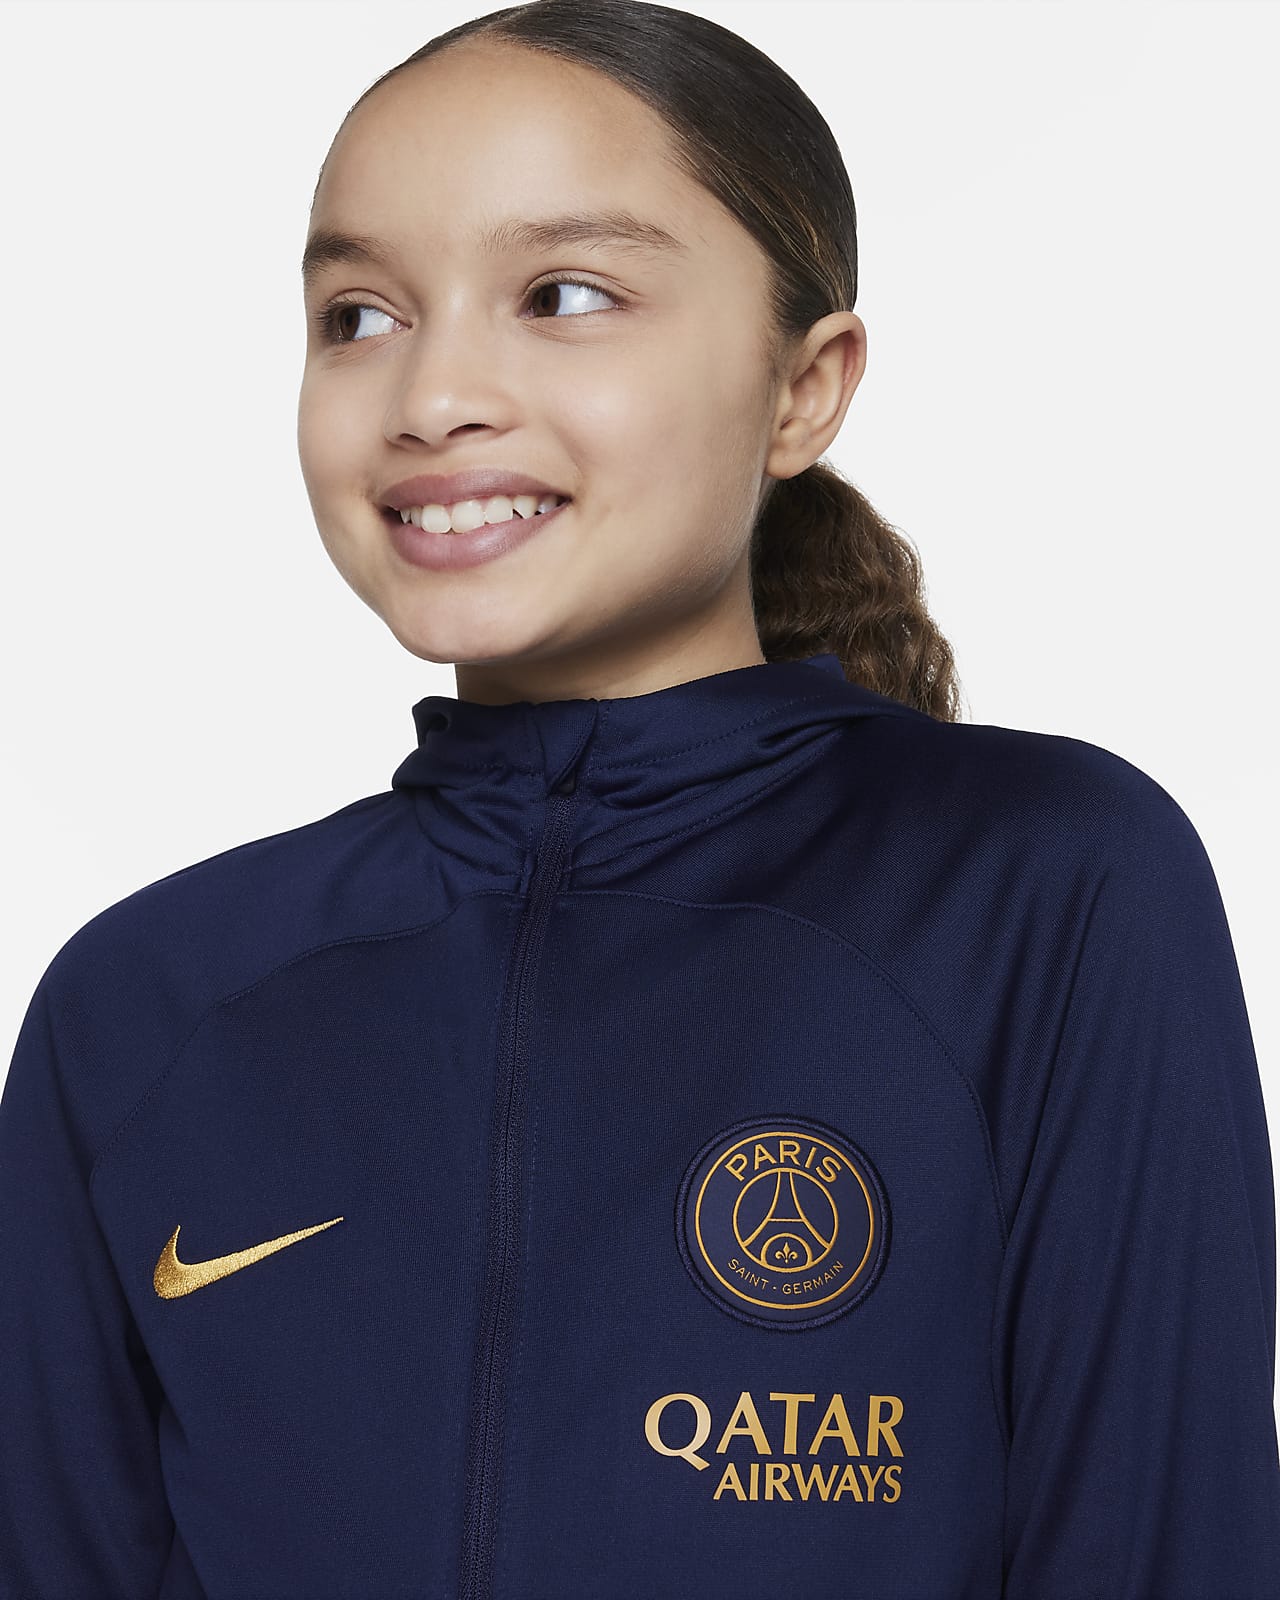 Paris Saint-Germain Men's Anthem Jacket. Nike LU